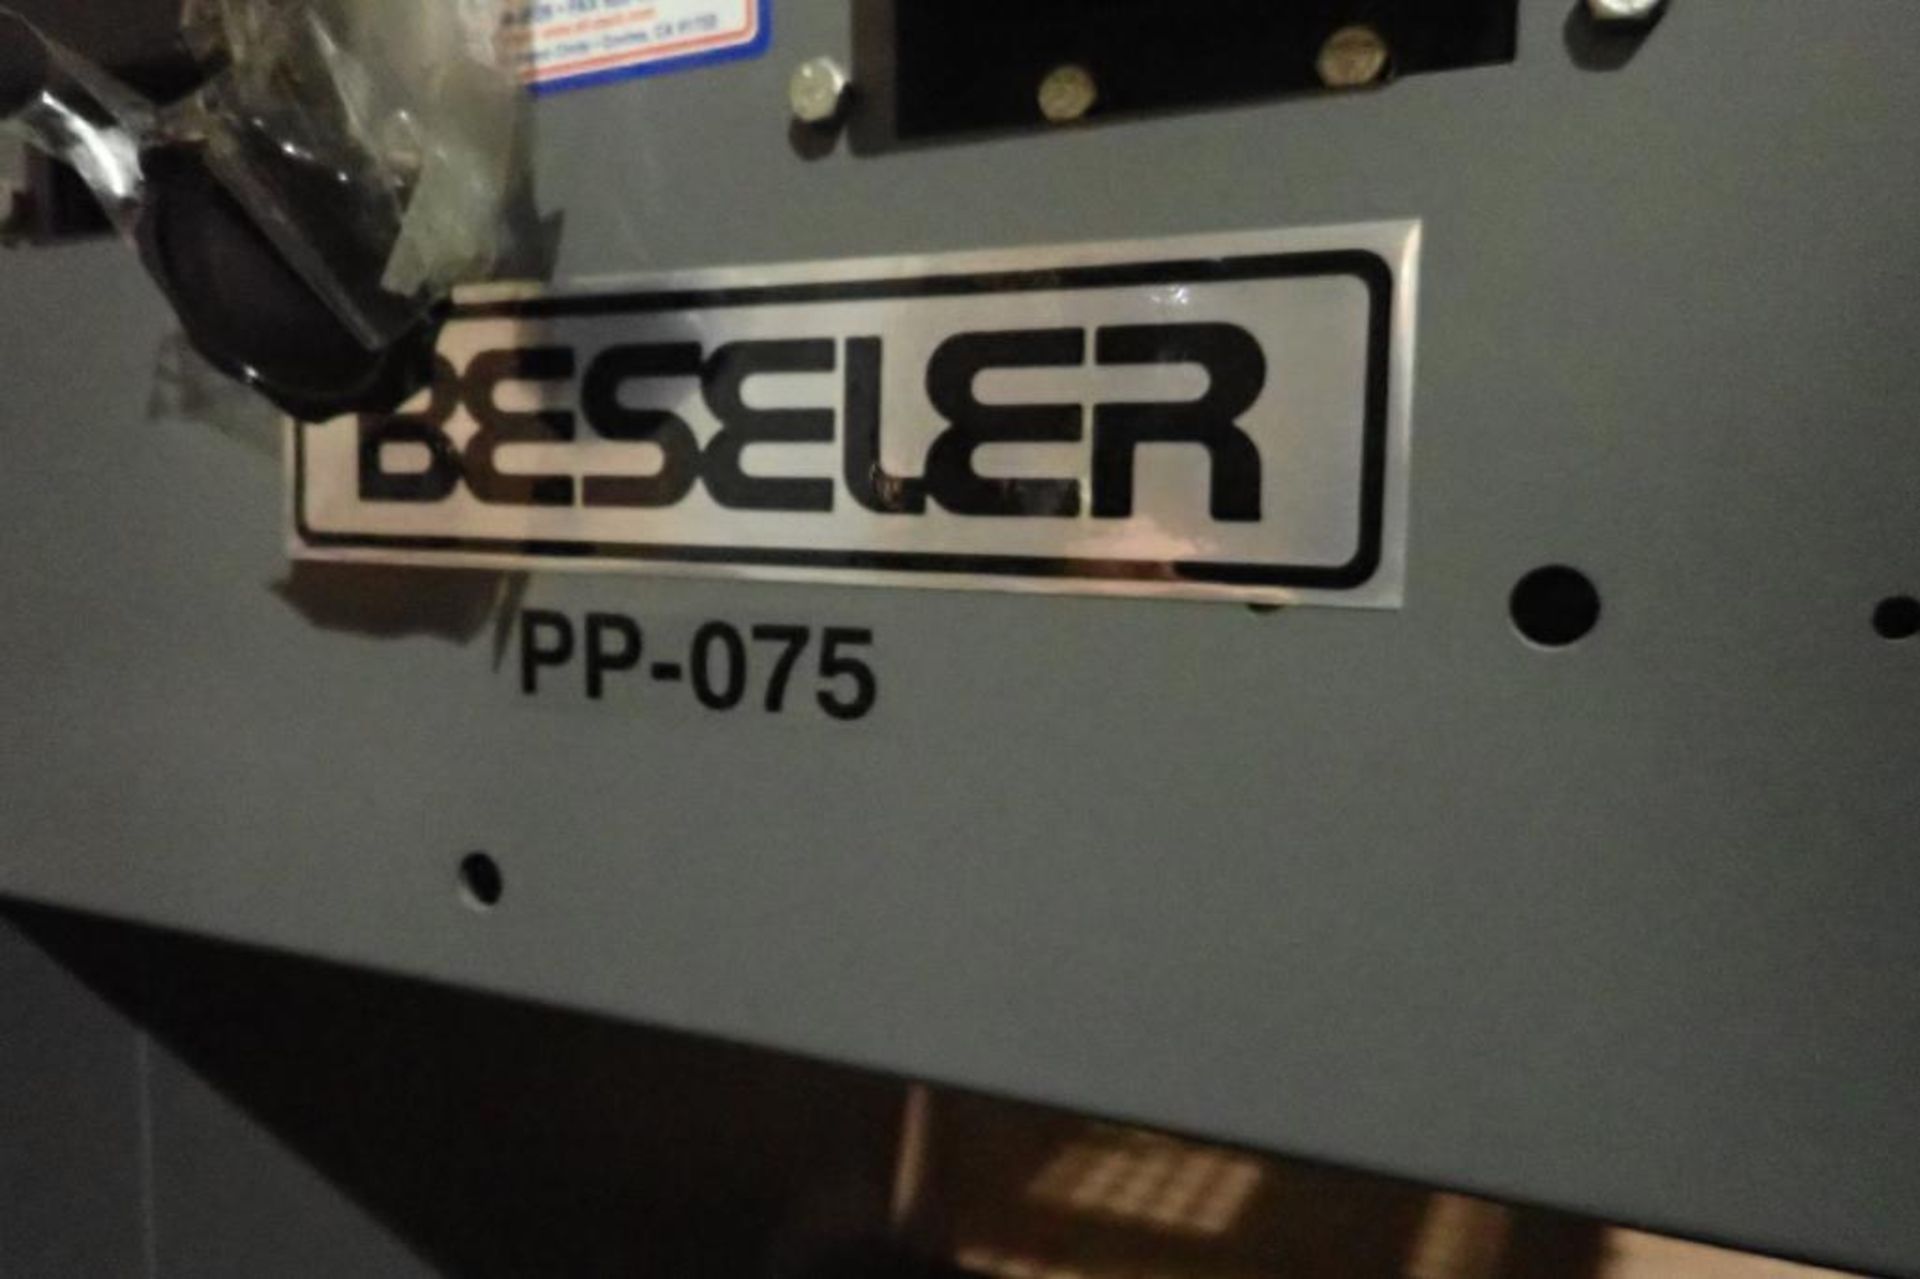 Beseler manual L bar sealer - Image 2 of 9